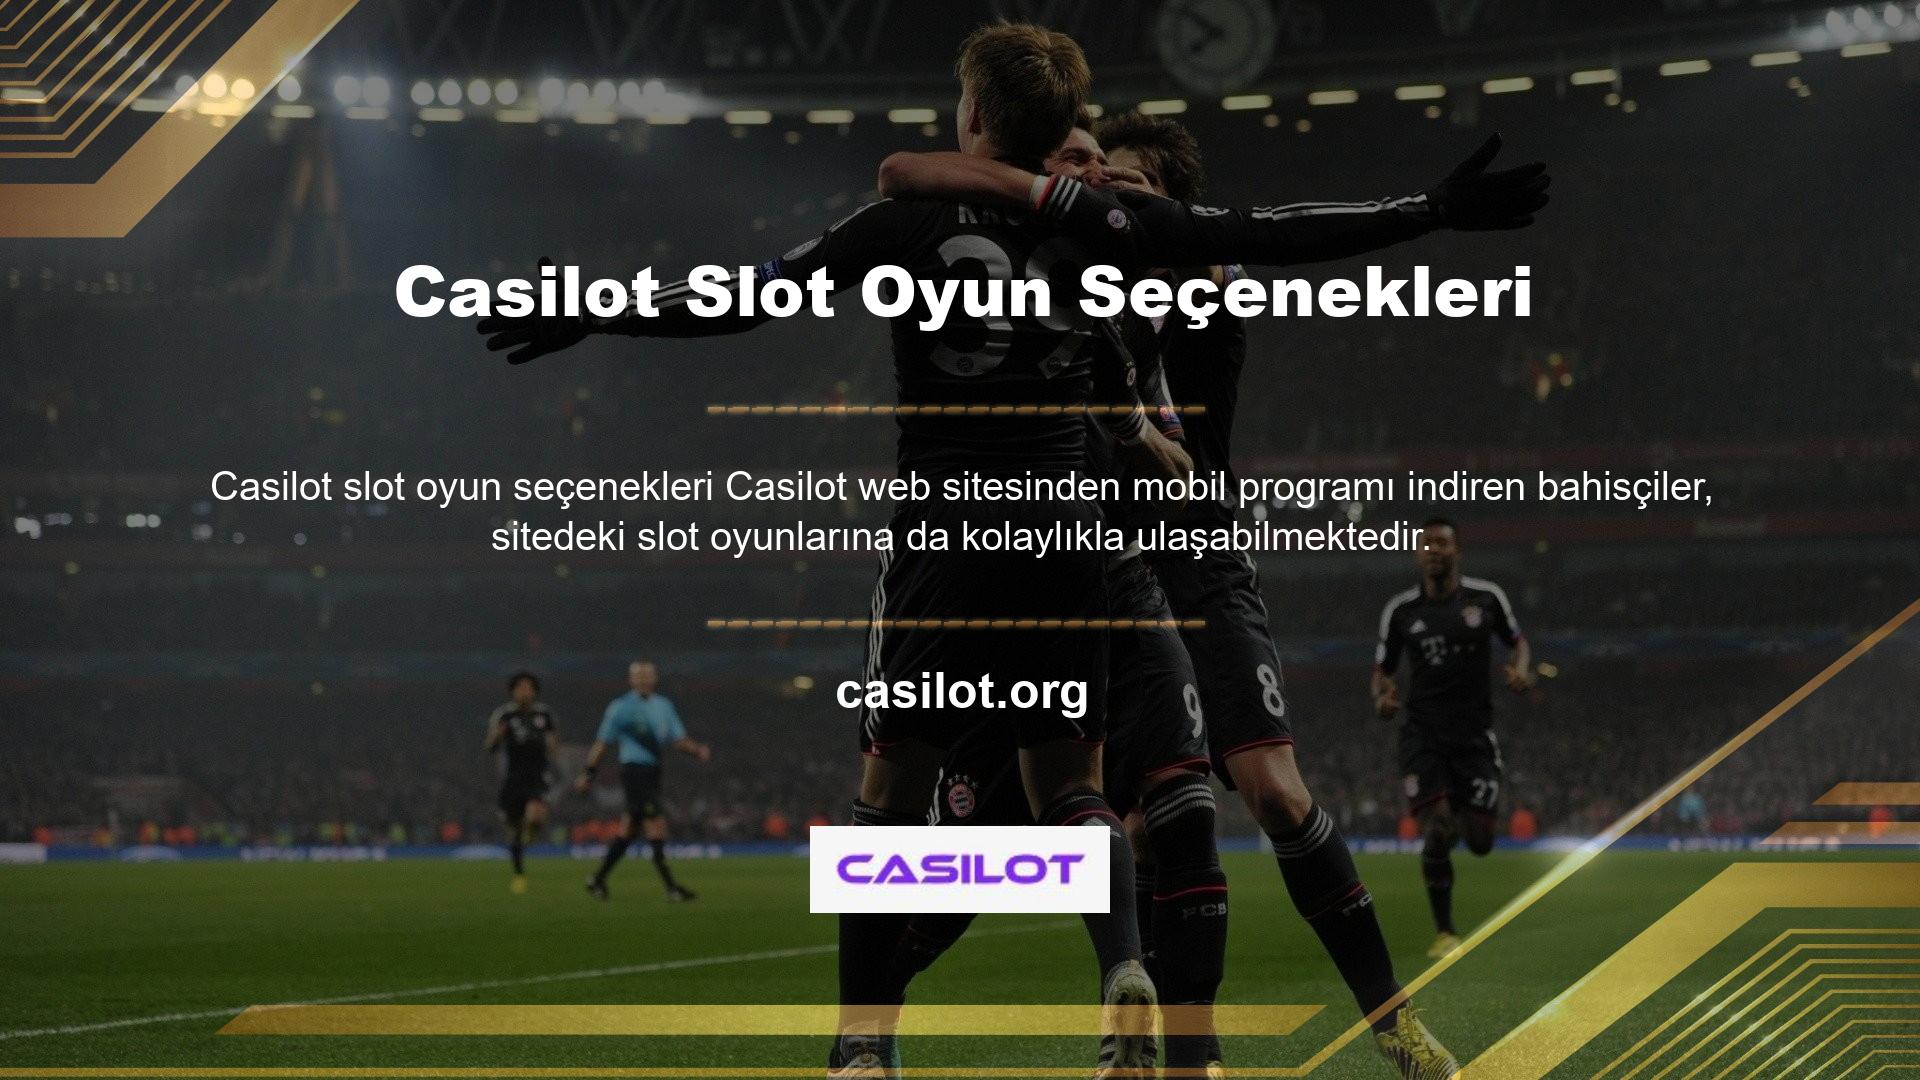 Casilot, web sitesinde hemen hemen herkesin keyif alabileceği ve keyif alabileceği birçok harika oyun yayınlıyor